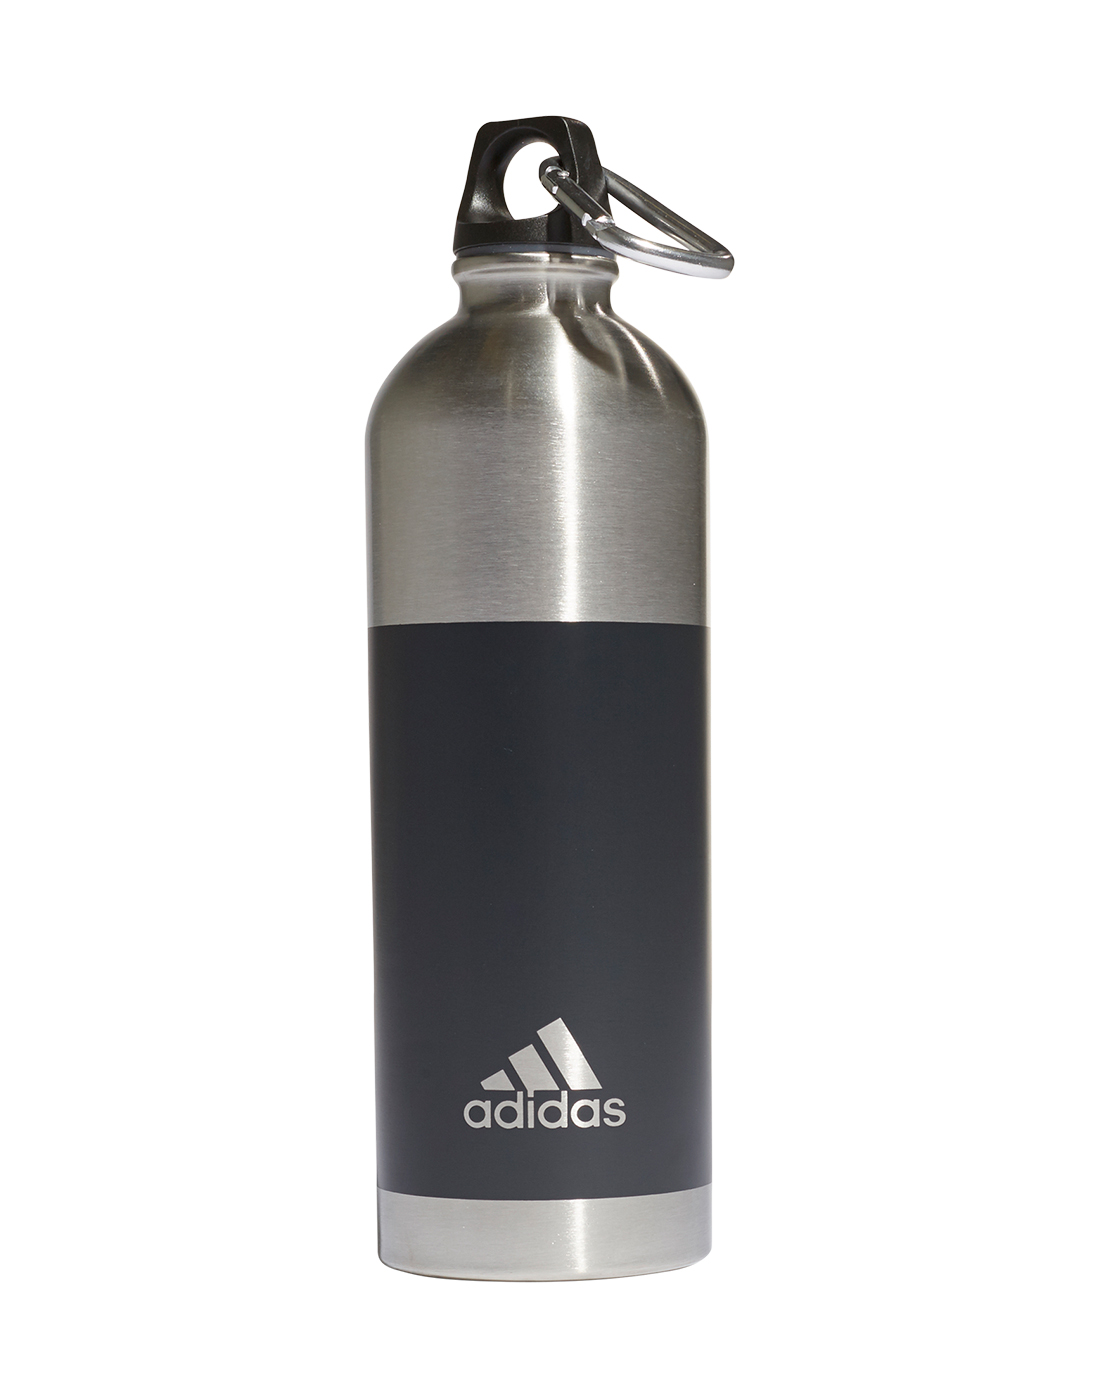 adidas metal bottle